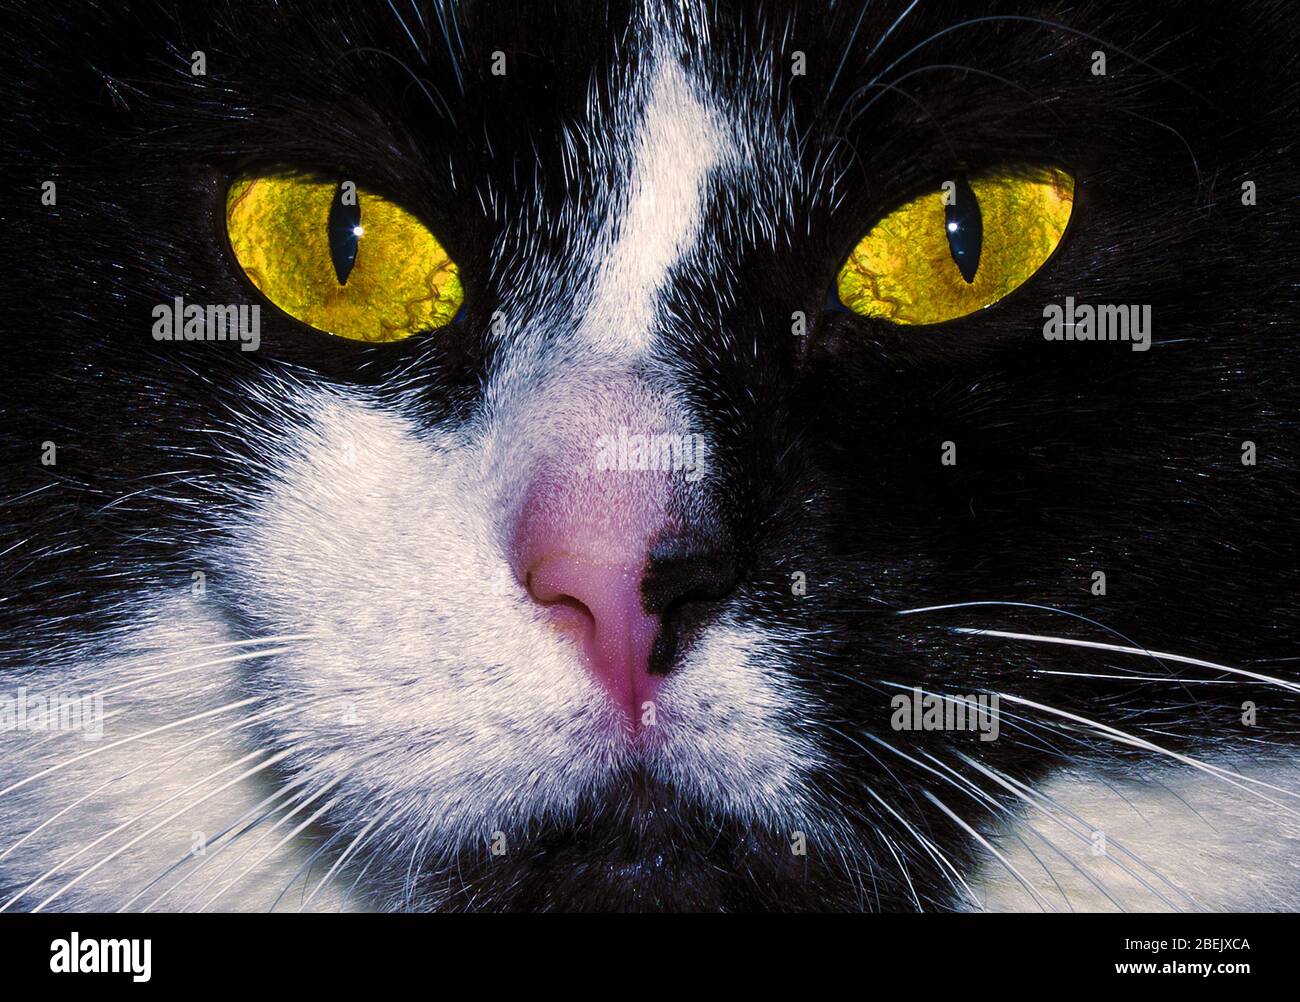 Cat closeup Stock Photo